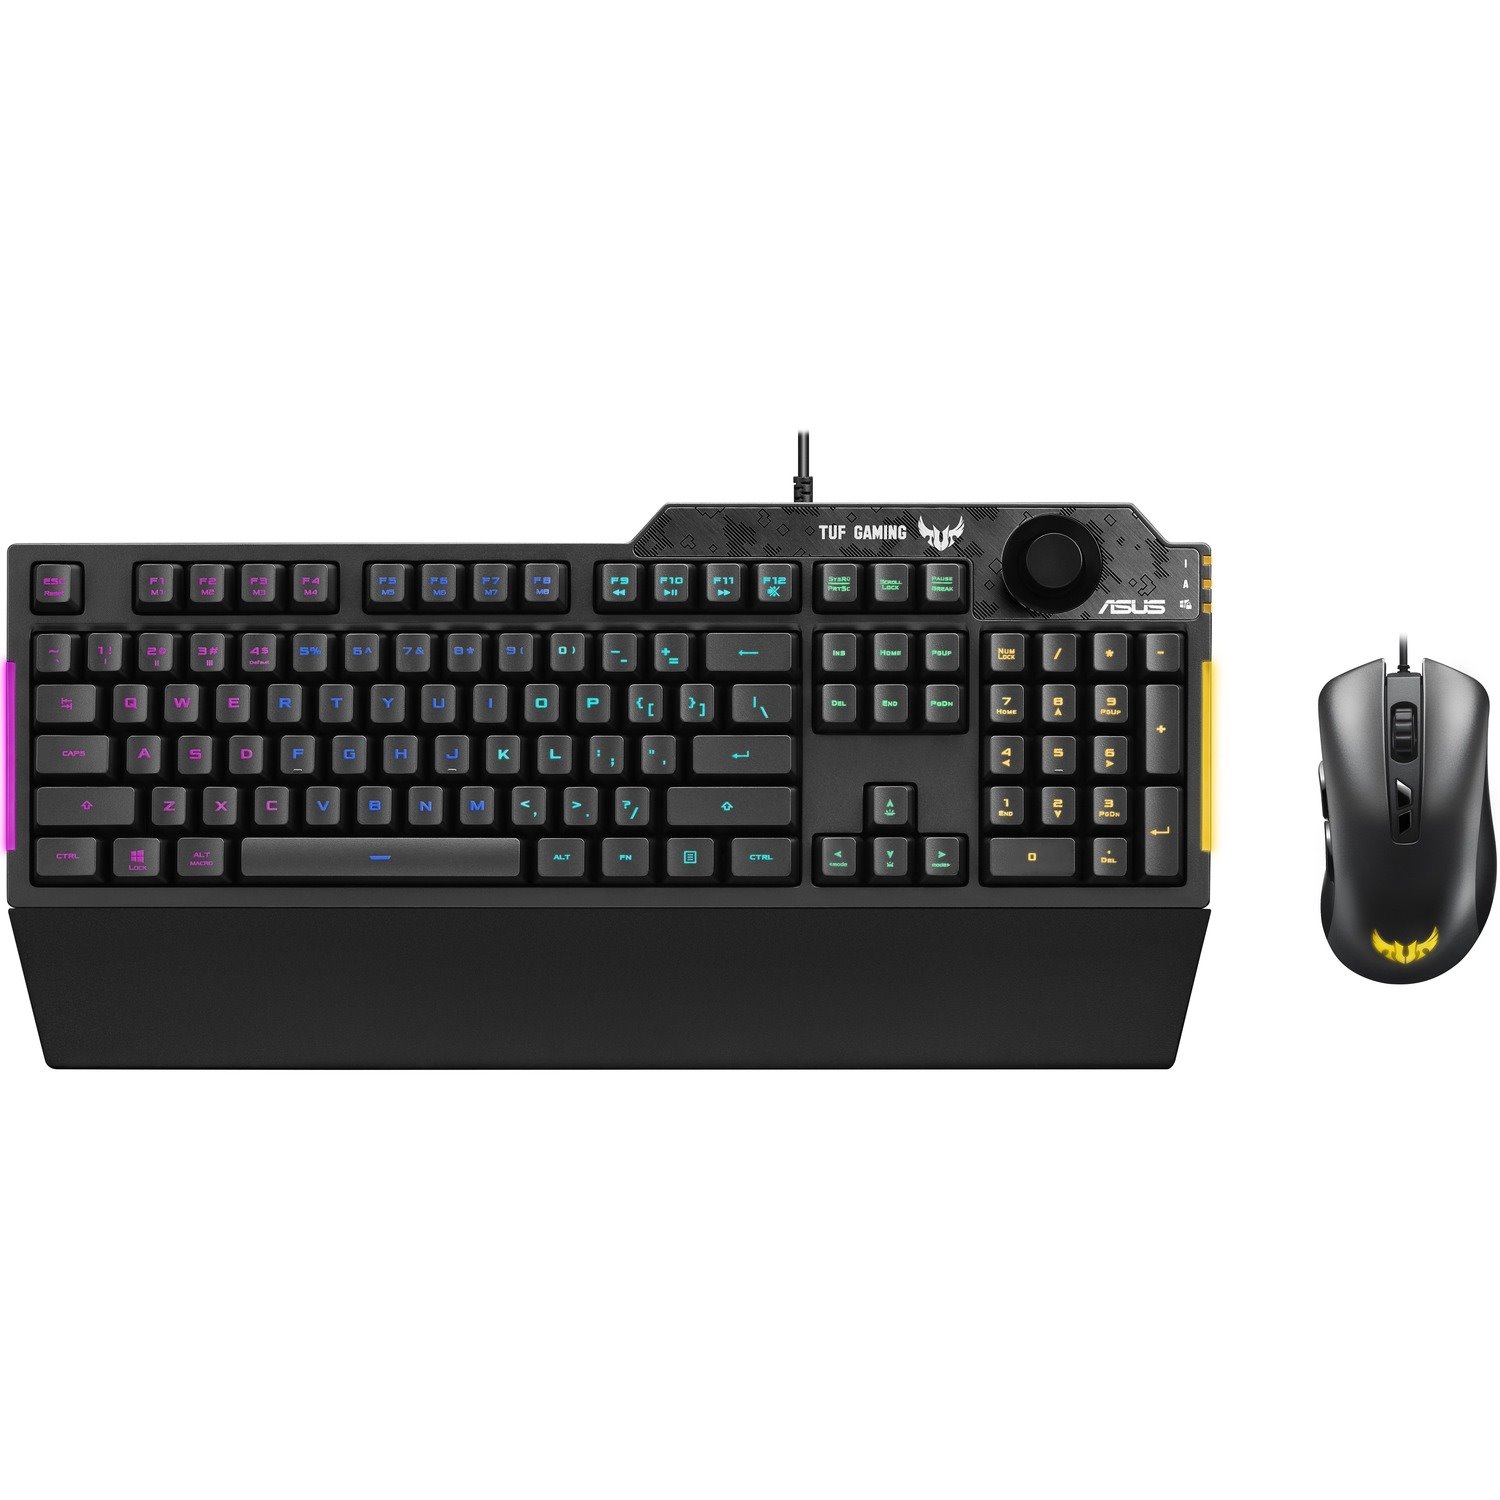 TUF Gaming Keyboard & Mouse